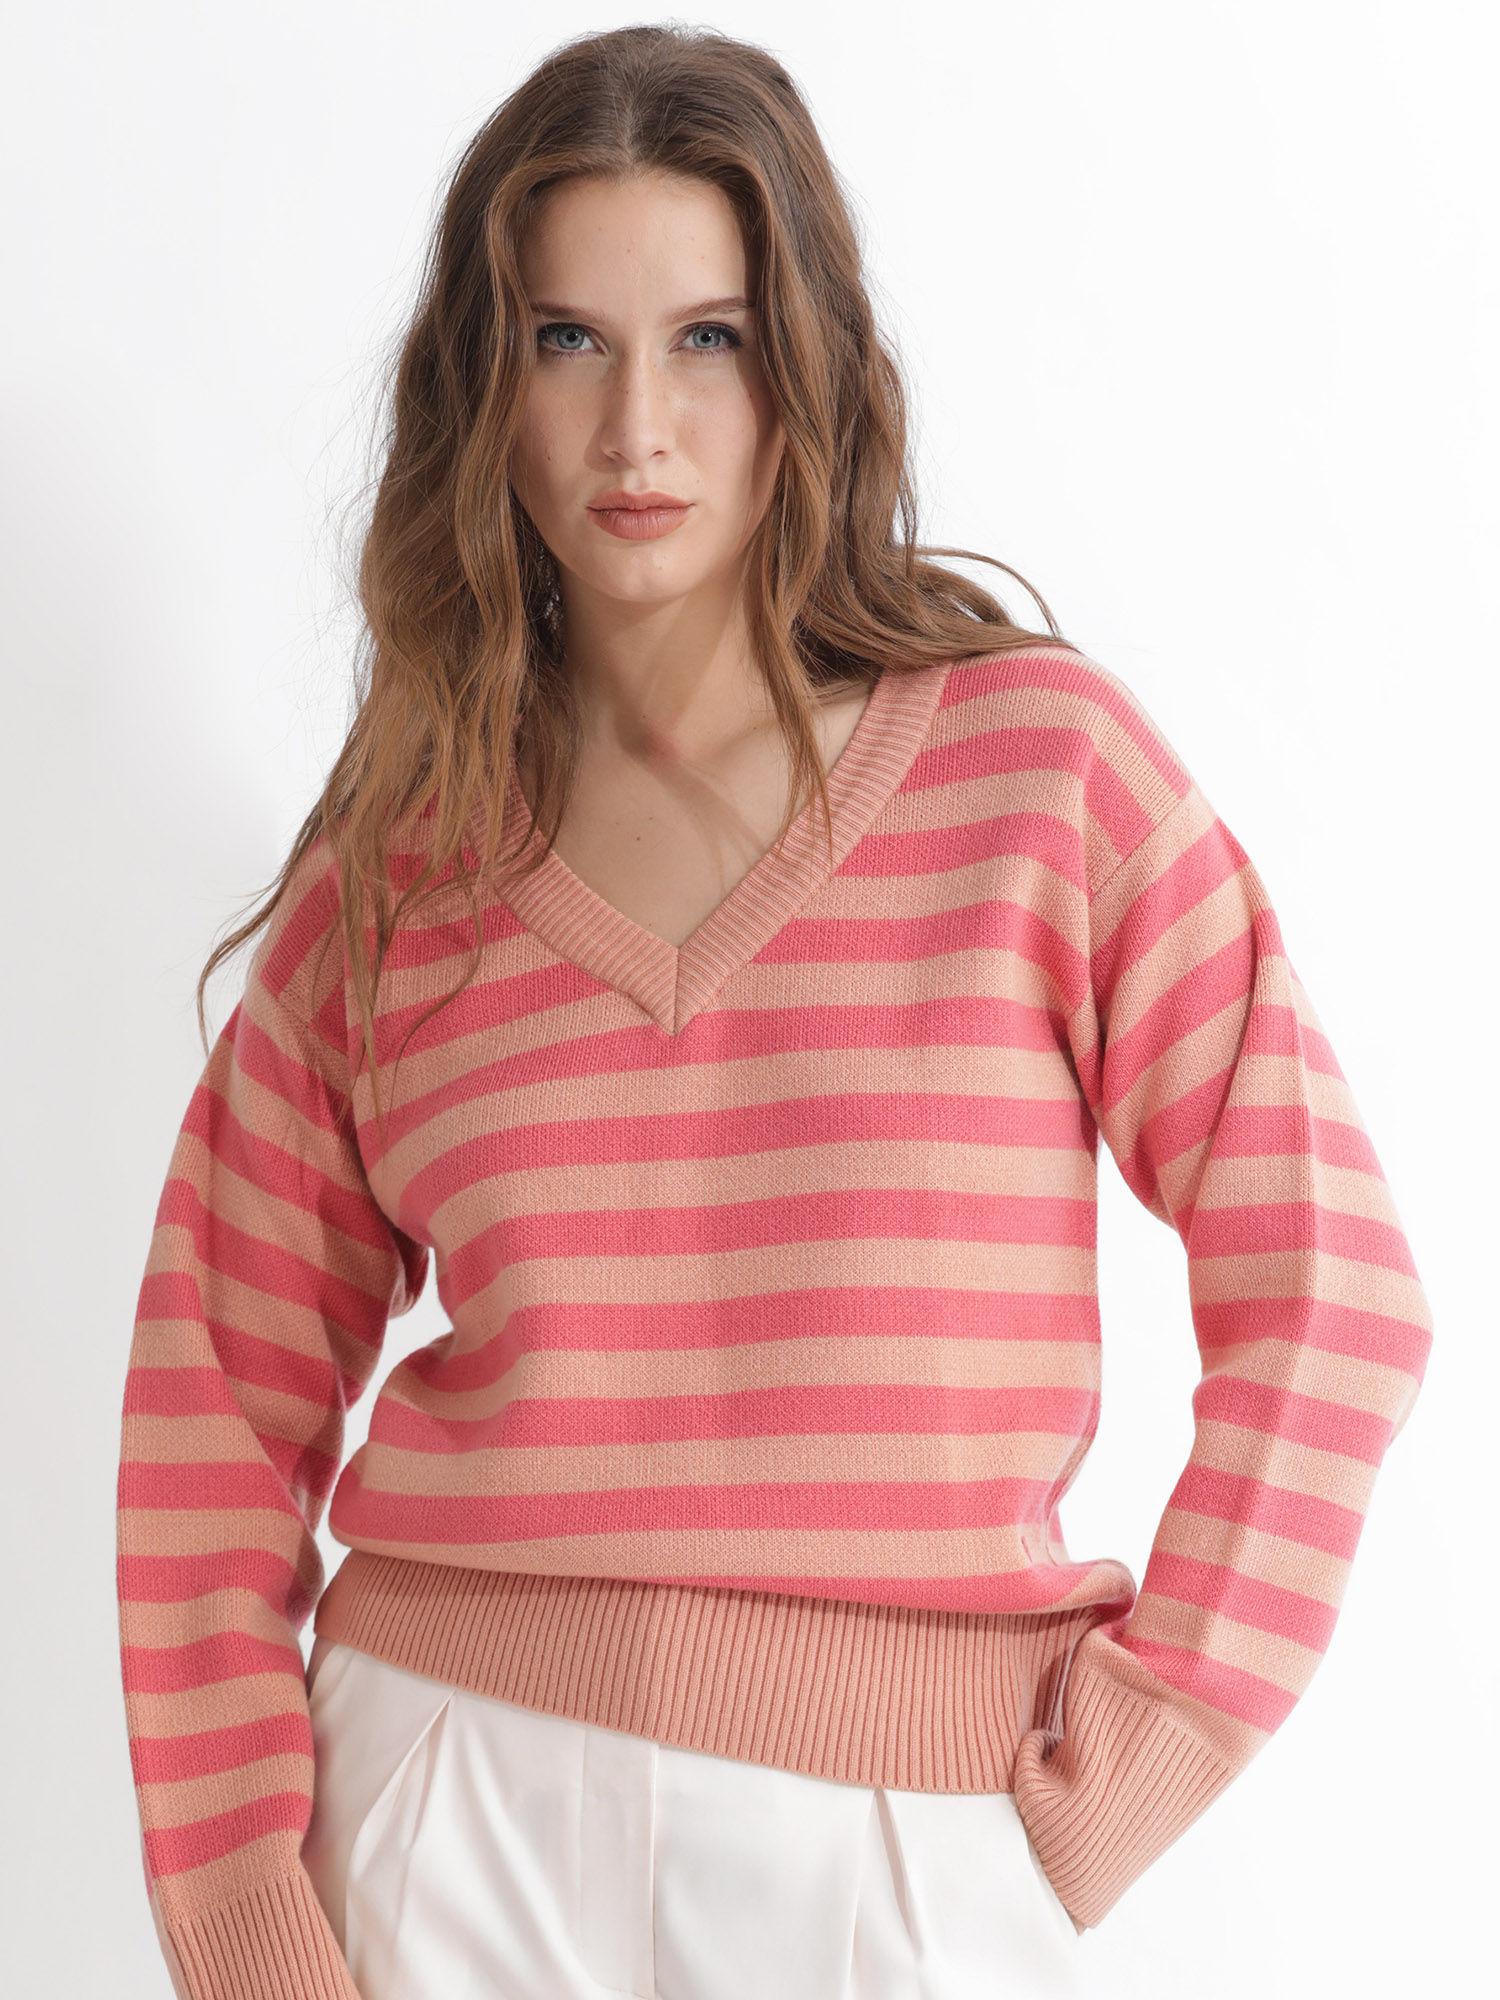 ronnie dark pink sweater